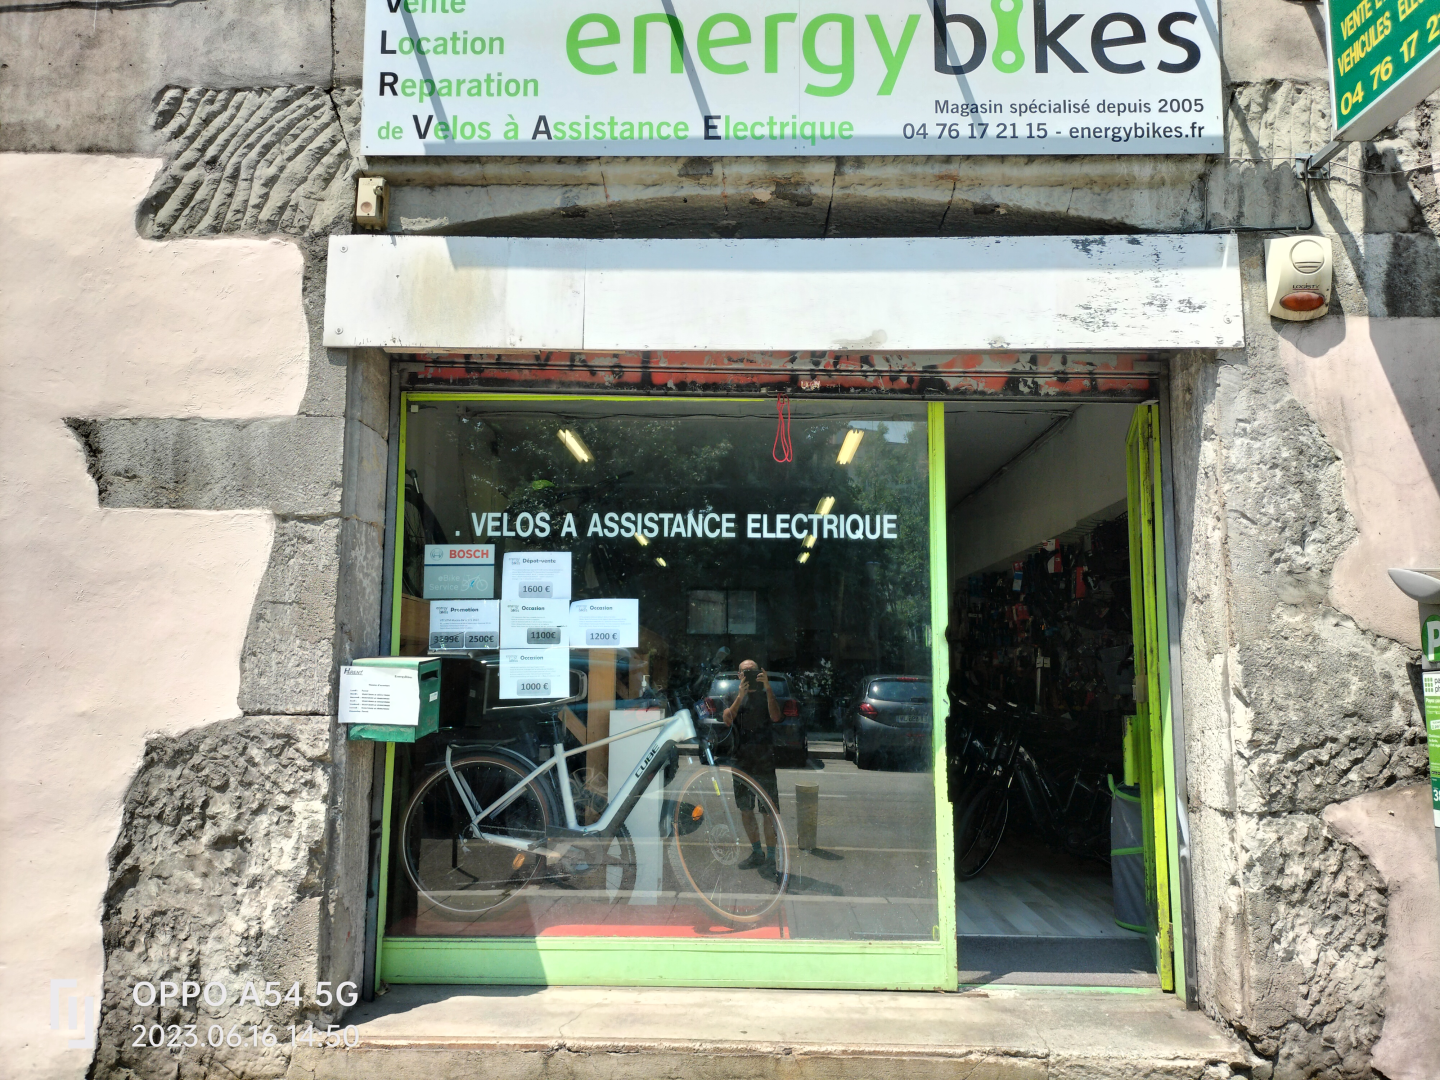 Energybikes